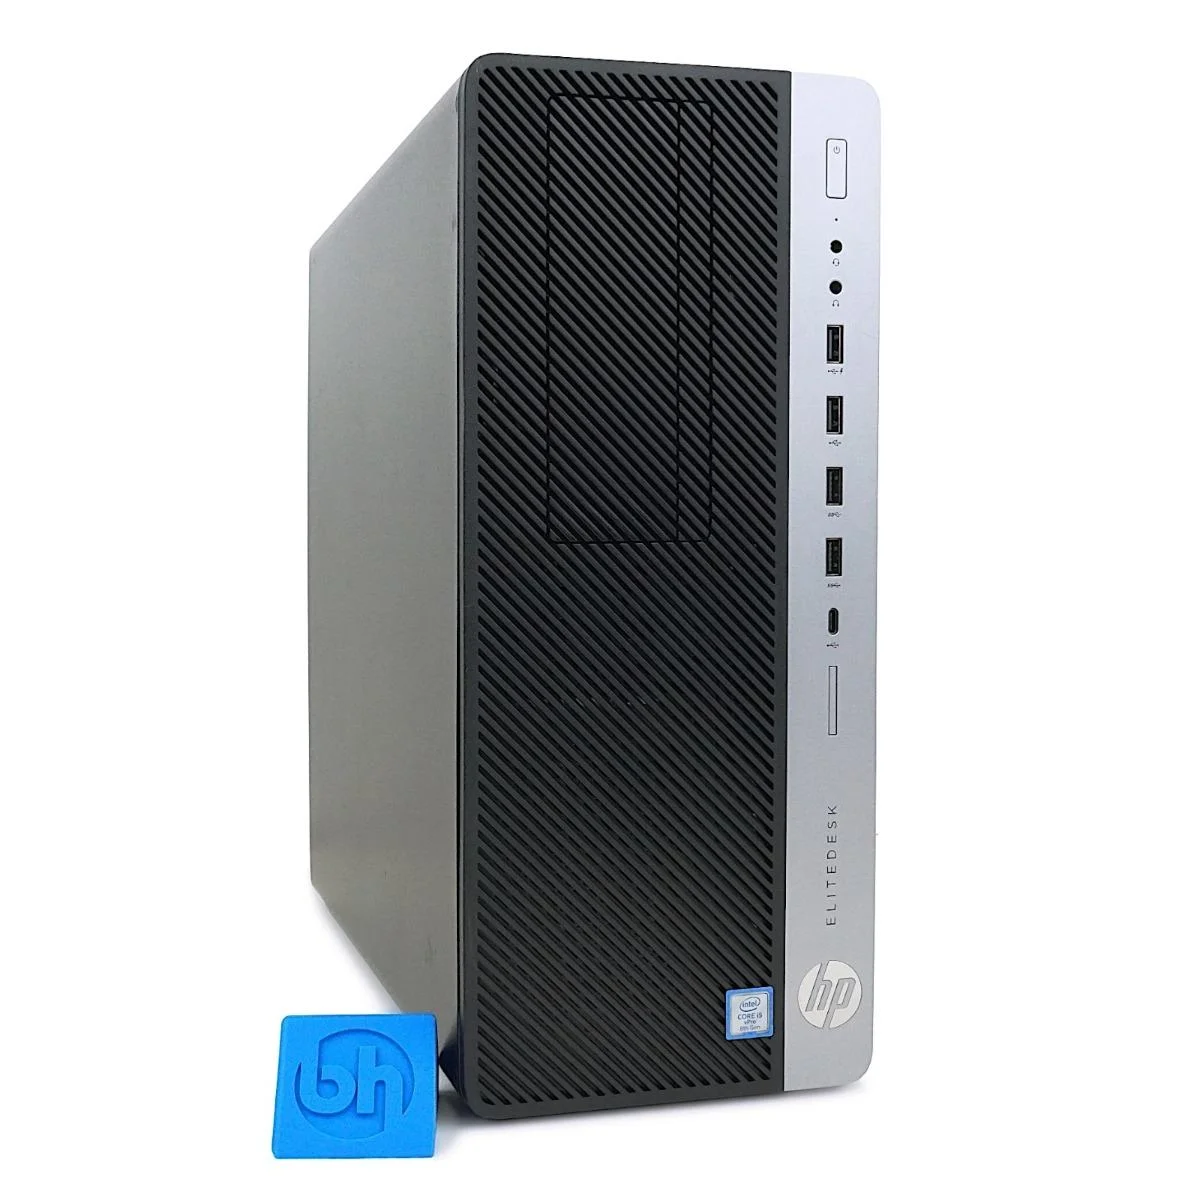 HP EliteDesk 800 G4 Tower Desktop PC